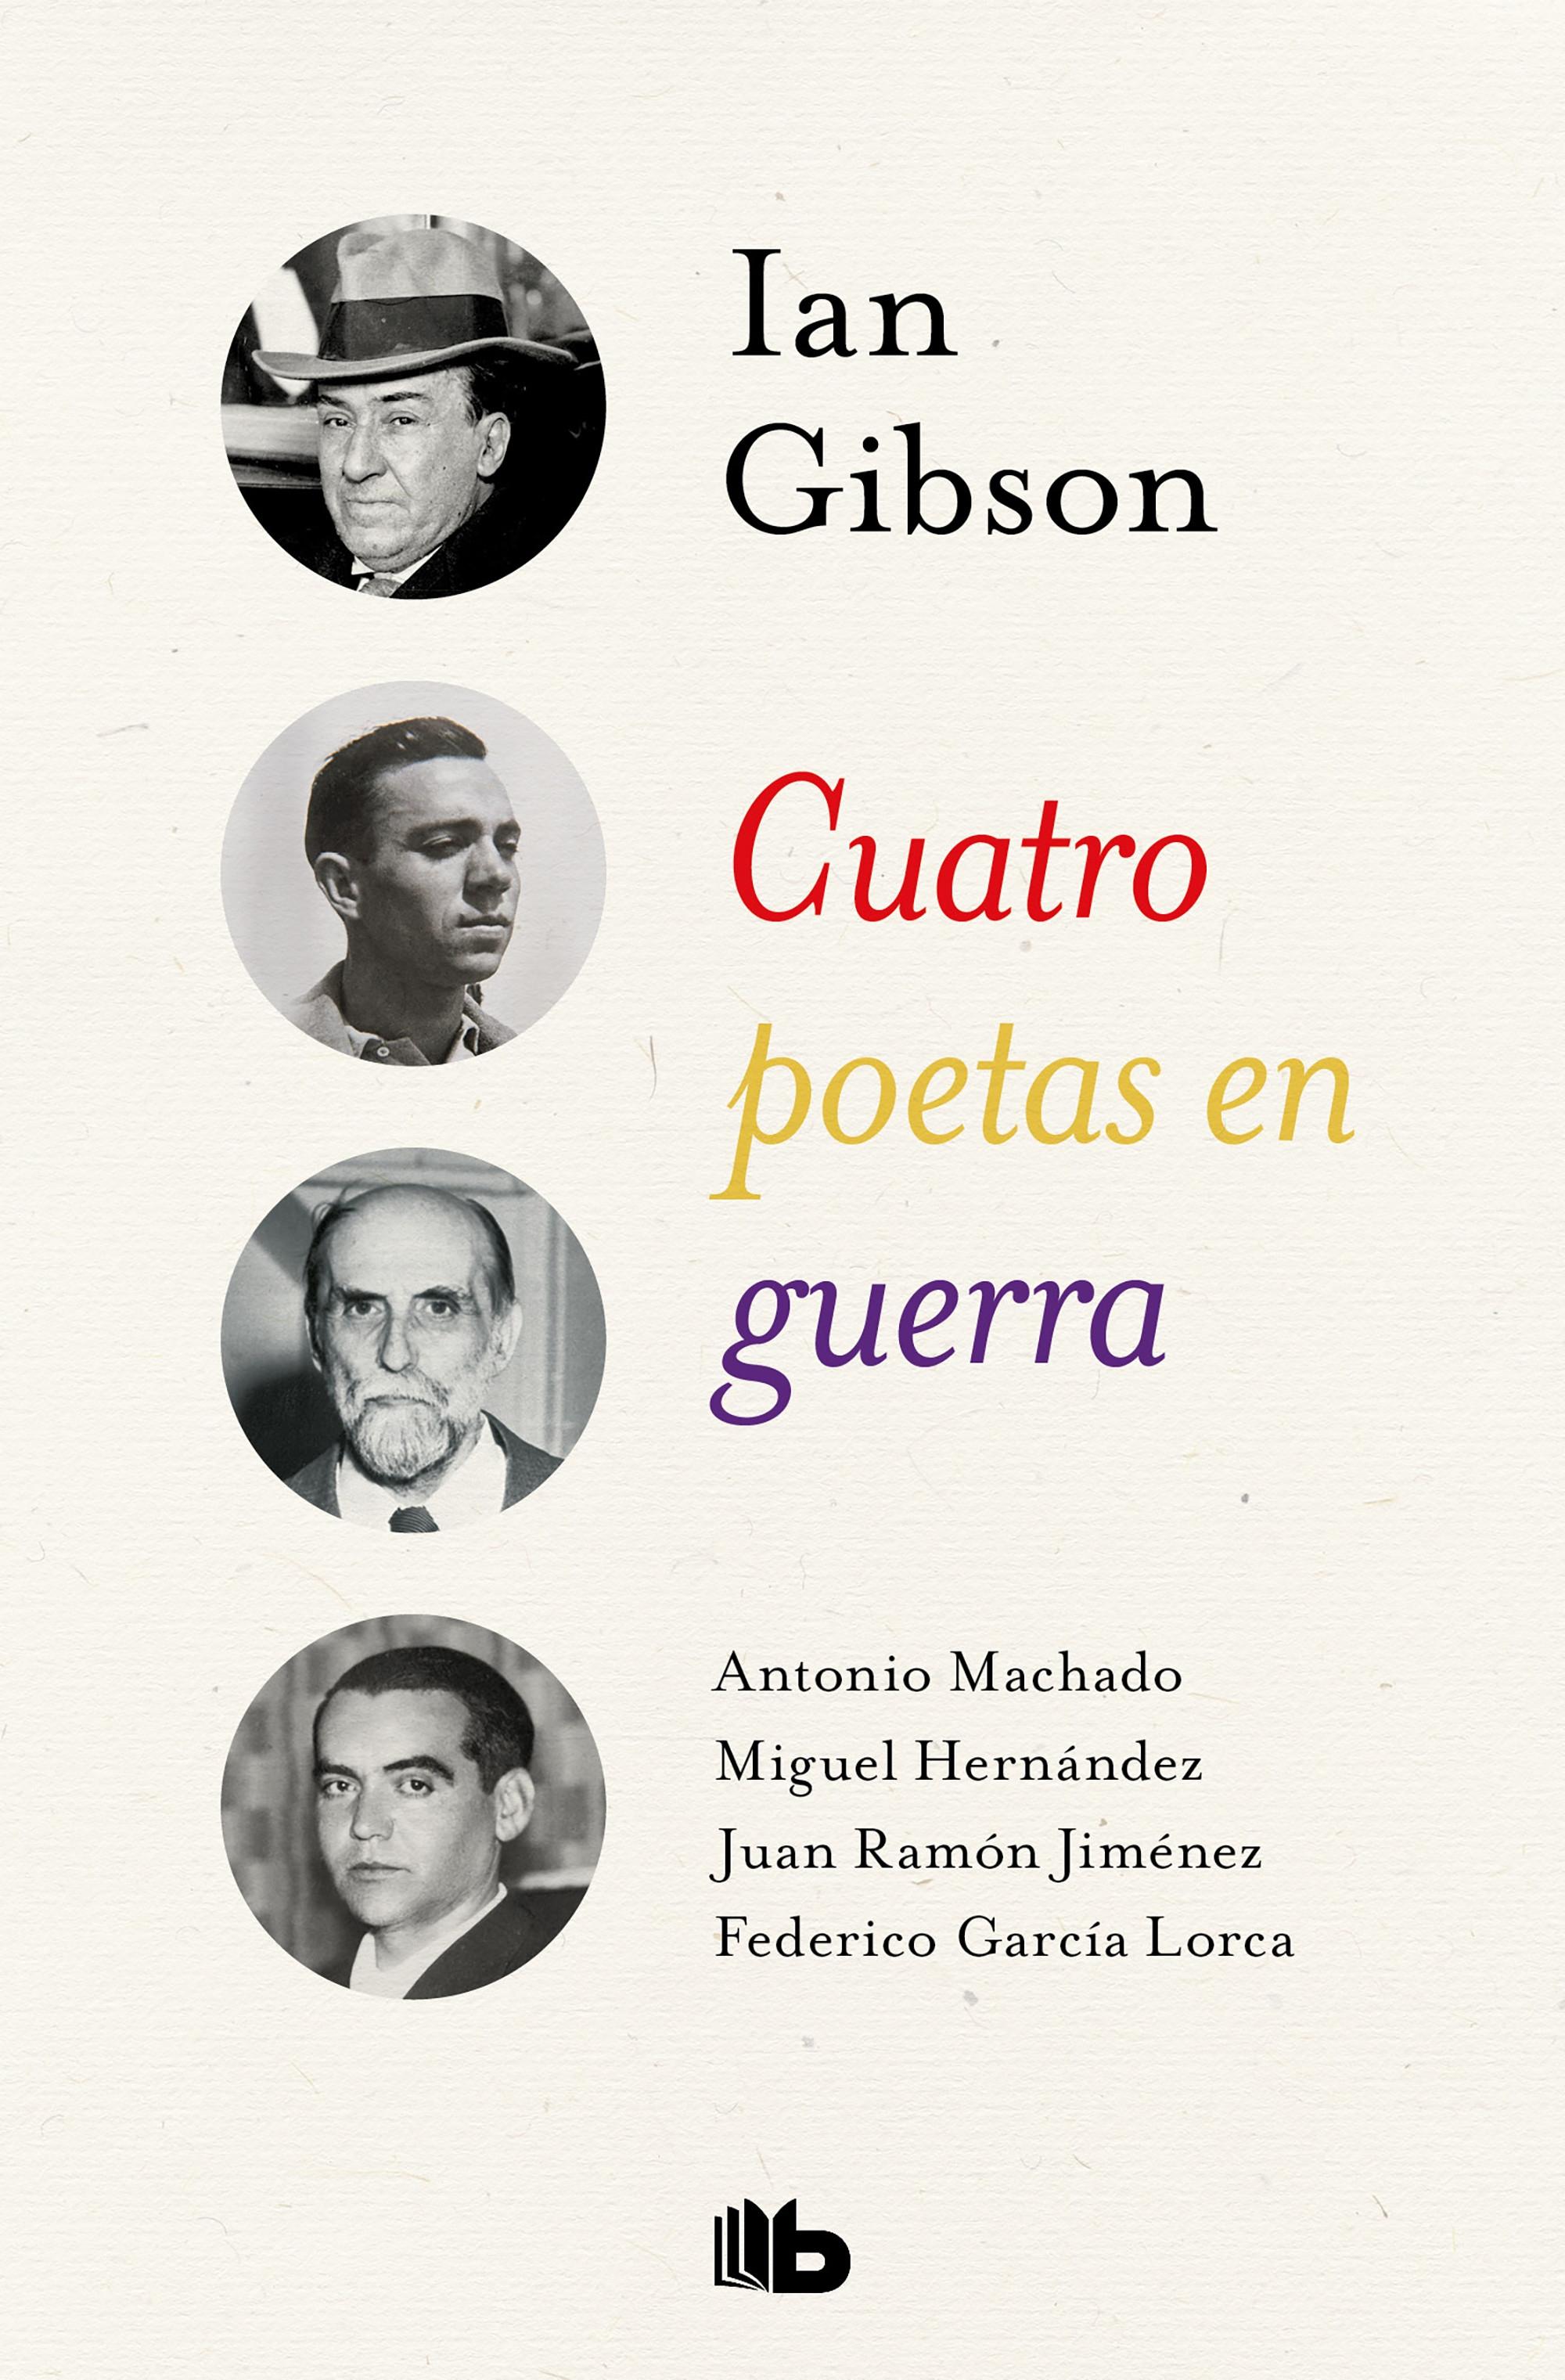 Cuatro poetas en guerra "Antonio Machado. Juan Ramón Jiménez, Federico García Lorca. Miguel Hernández"